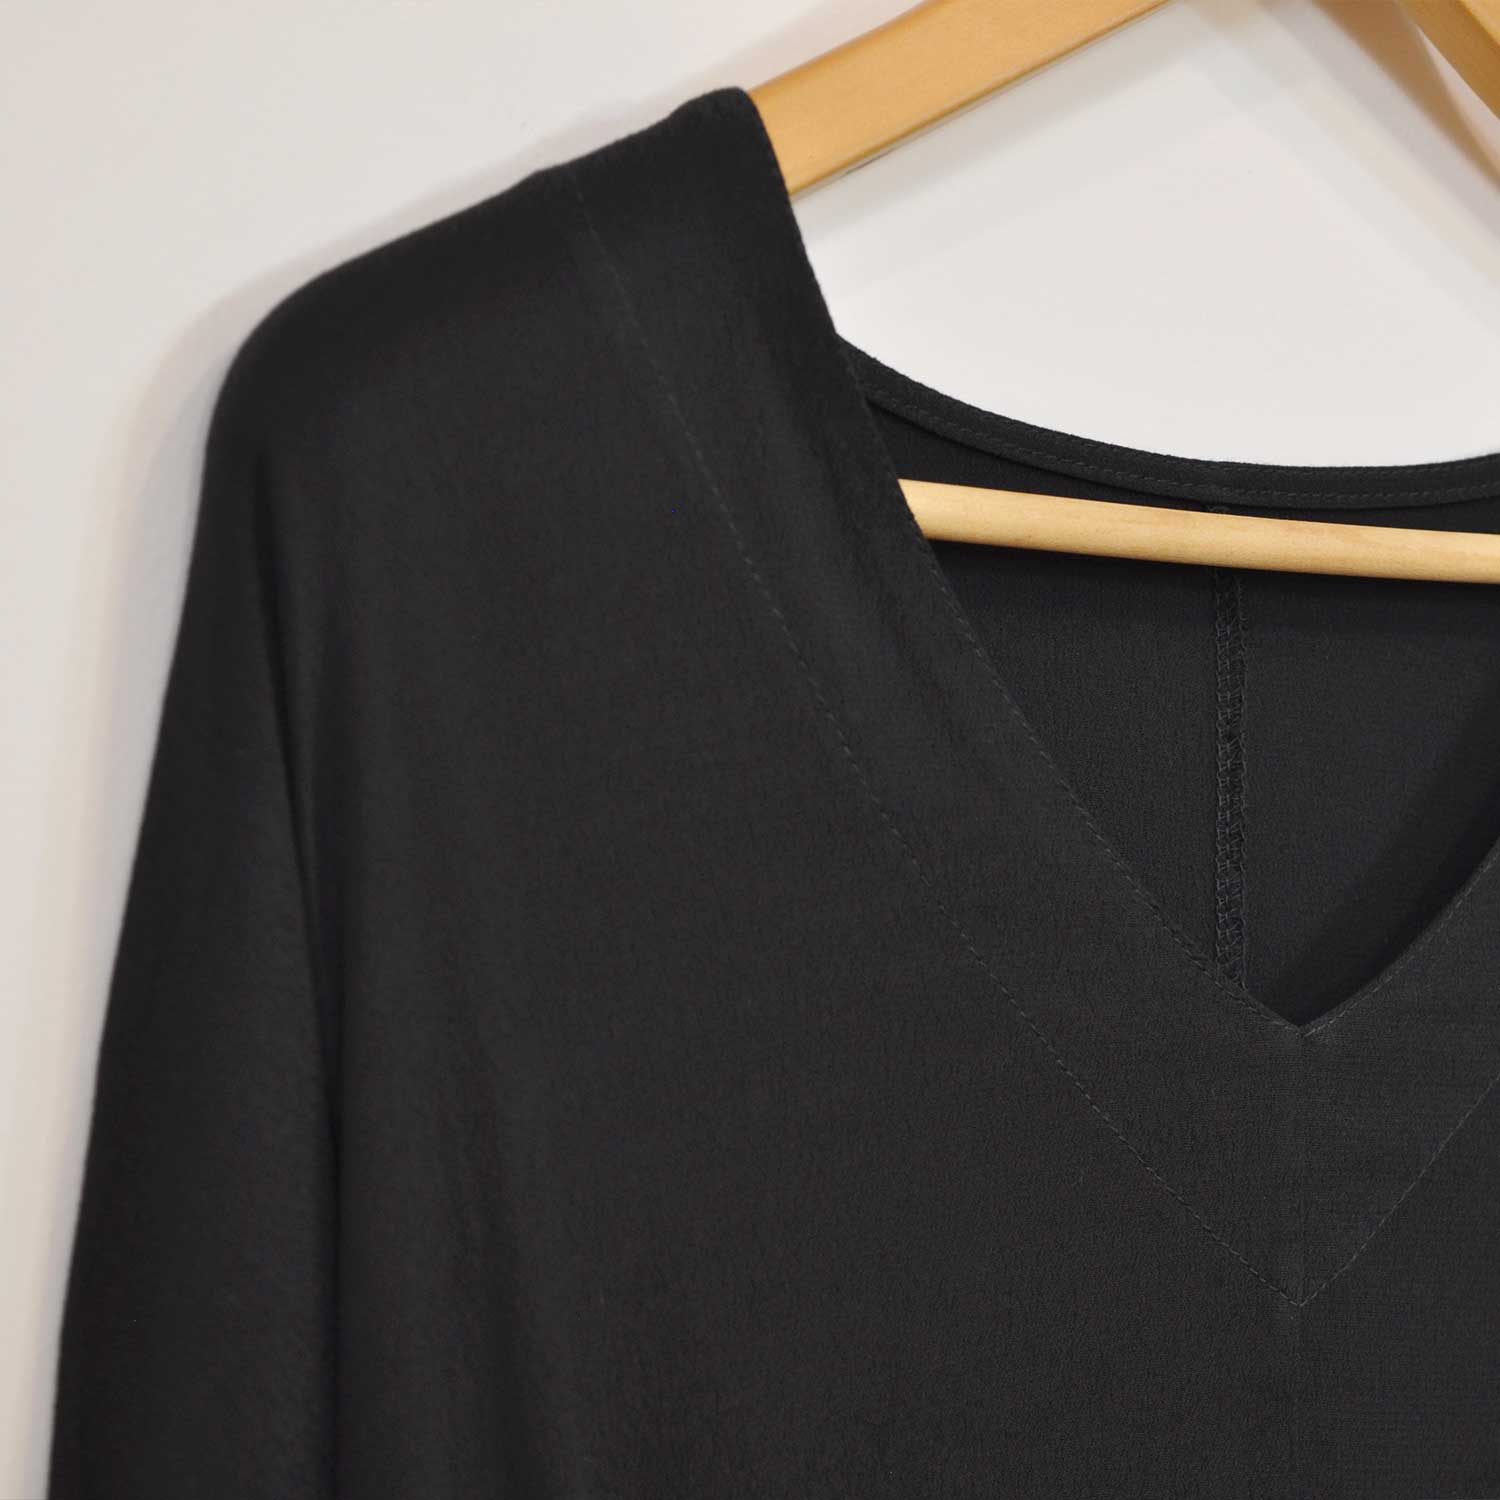 Black V-neck sewing blouse